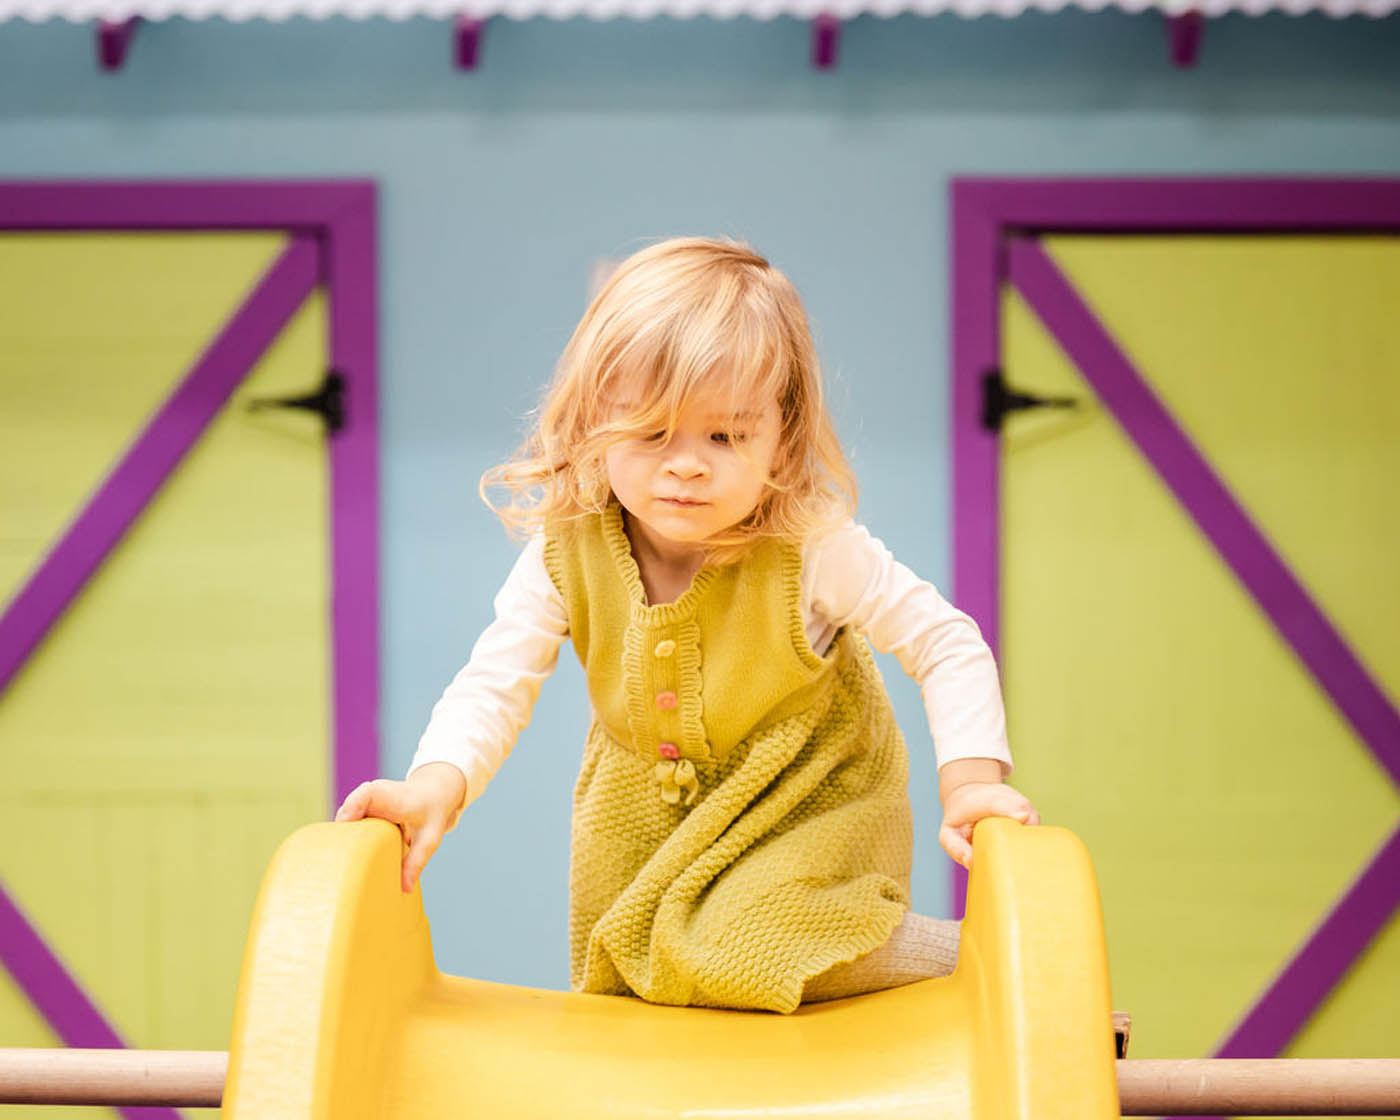 A girl climbing up a yellow slide enjoying open play.